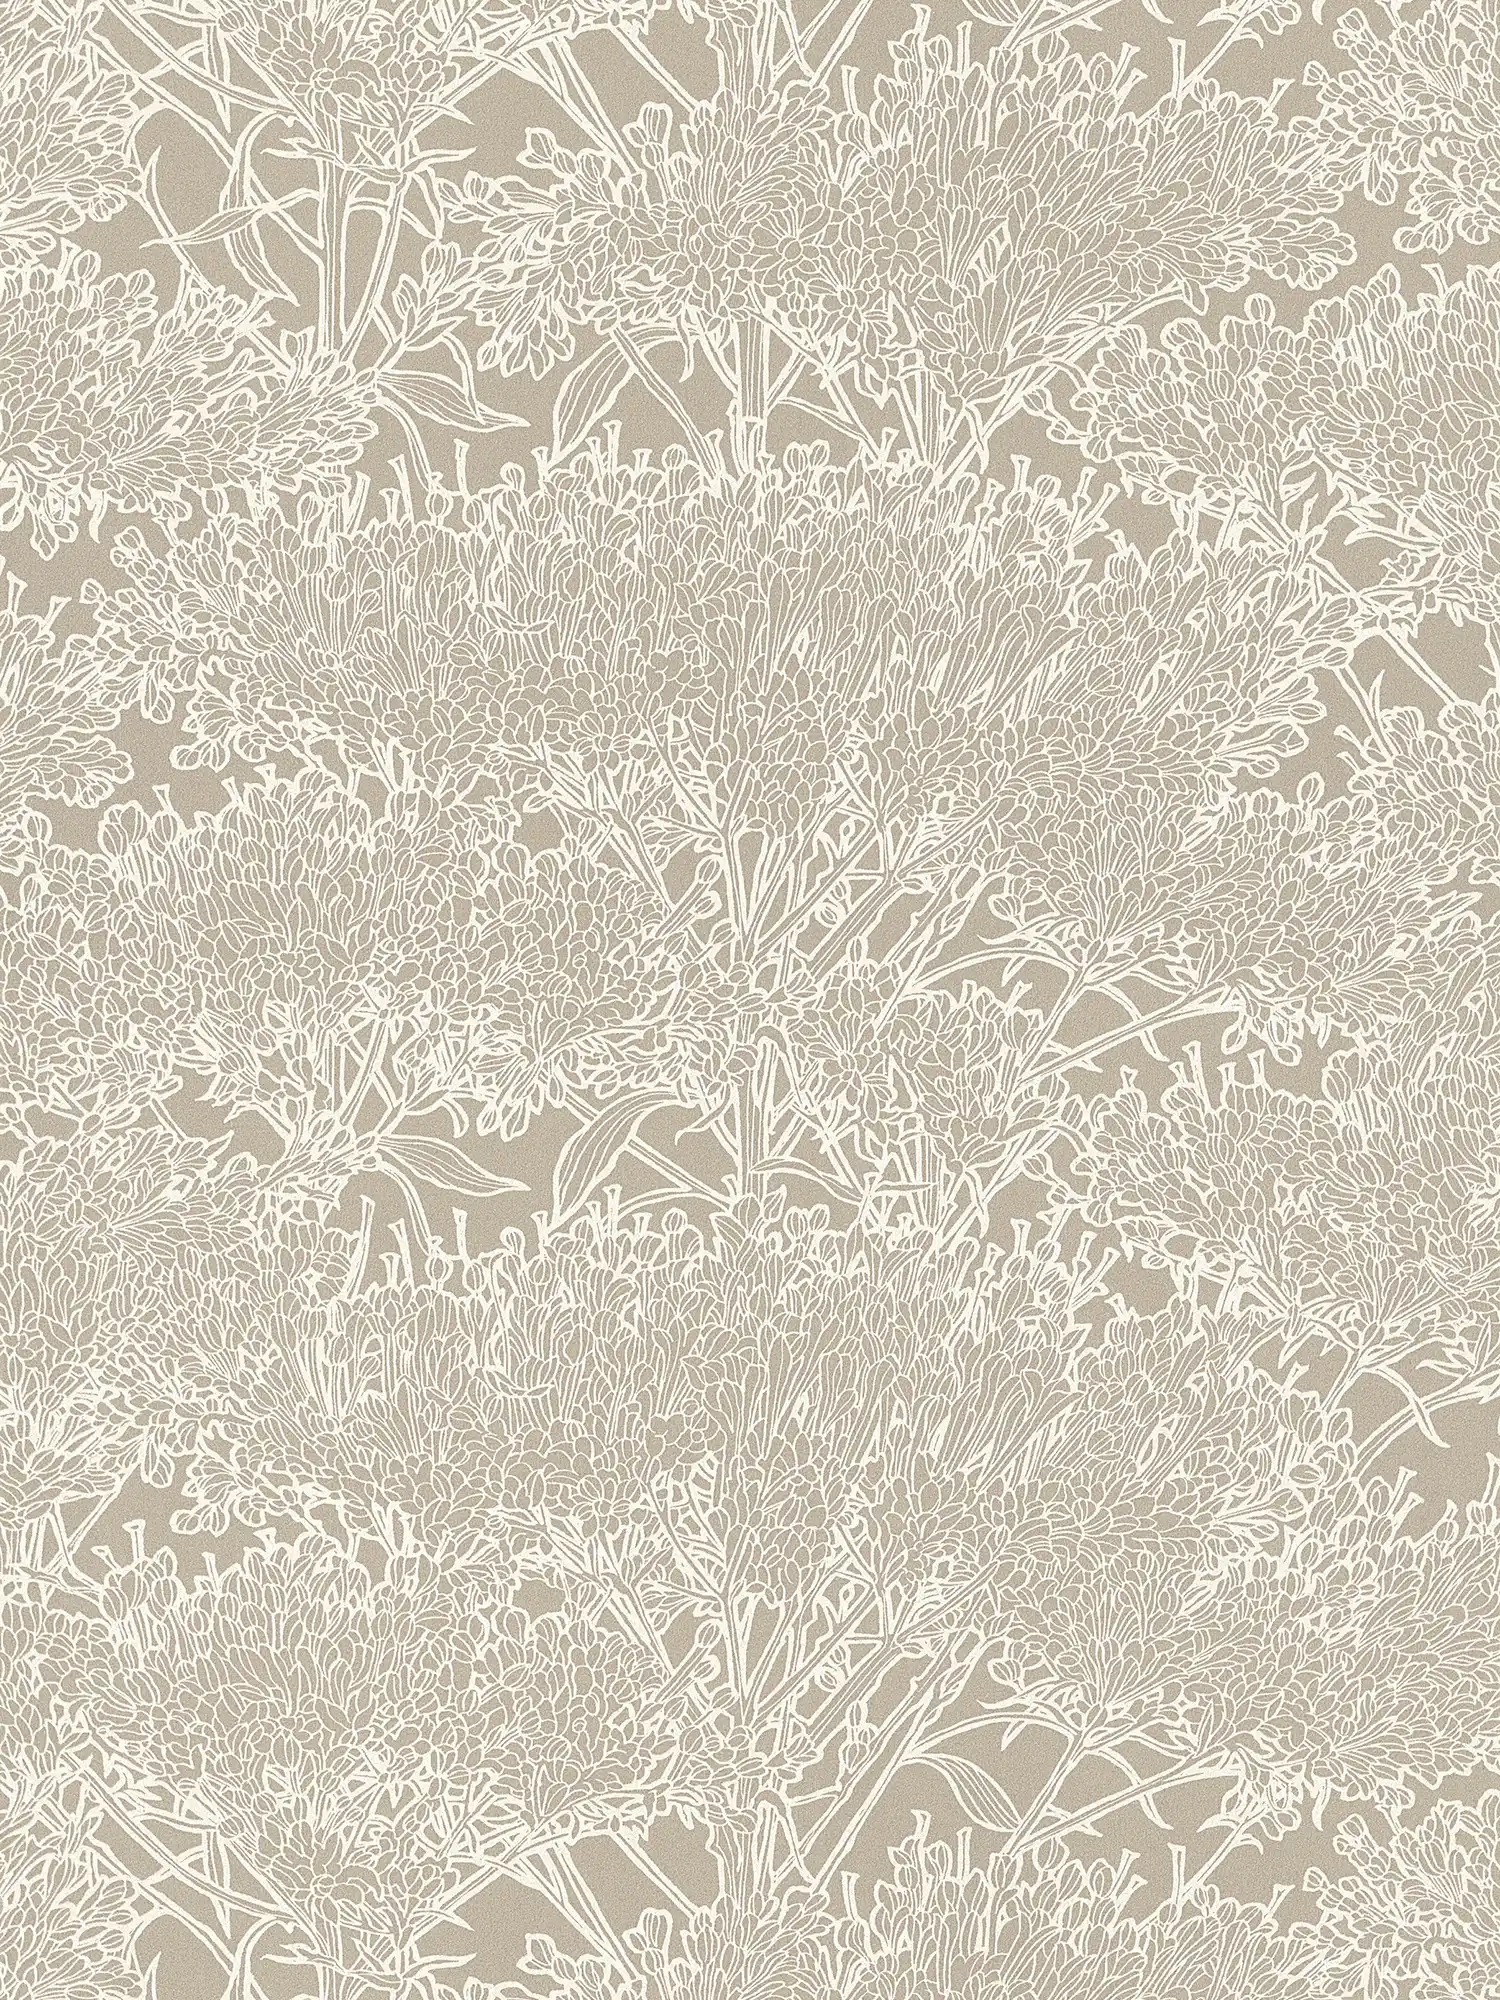 Papier peint méditerranéen Sable à motifs floraux - gris, argent, beige
